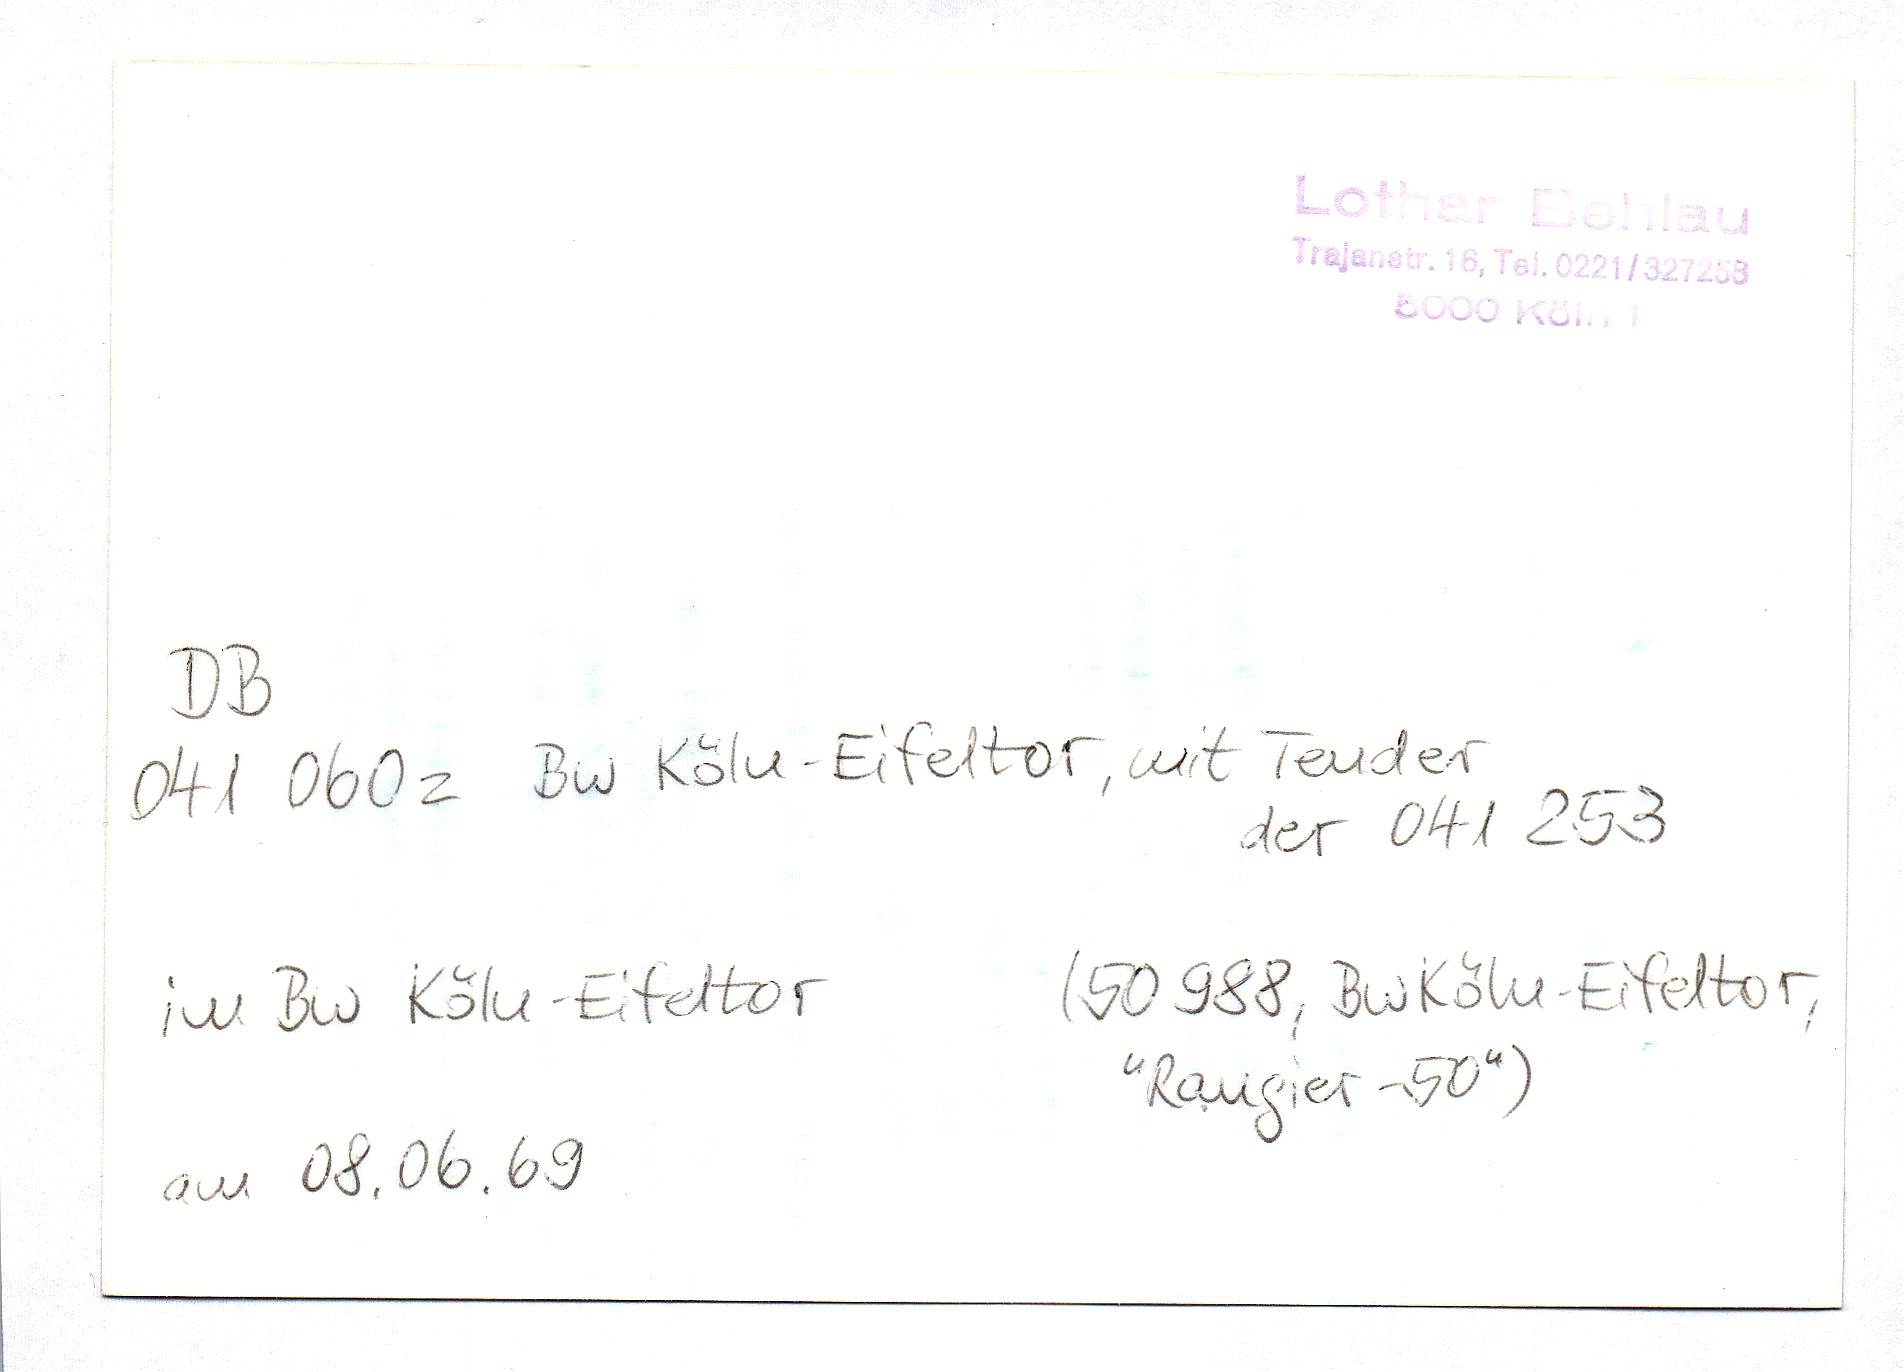 Foto DB 041 060z Bw Köln-Eifeltor mit Tender der 041 253 am 08.06.1969